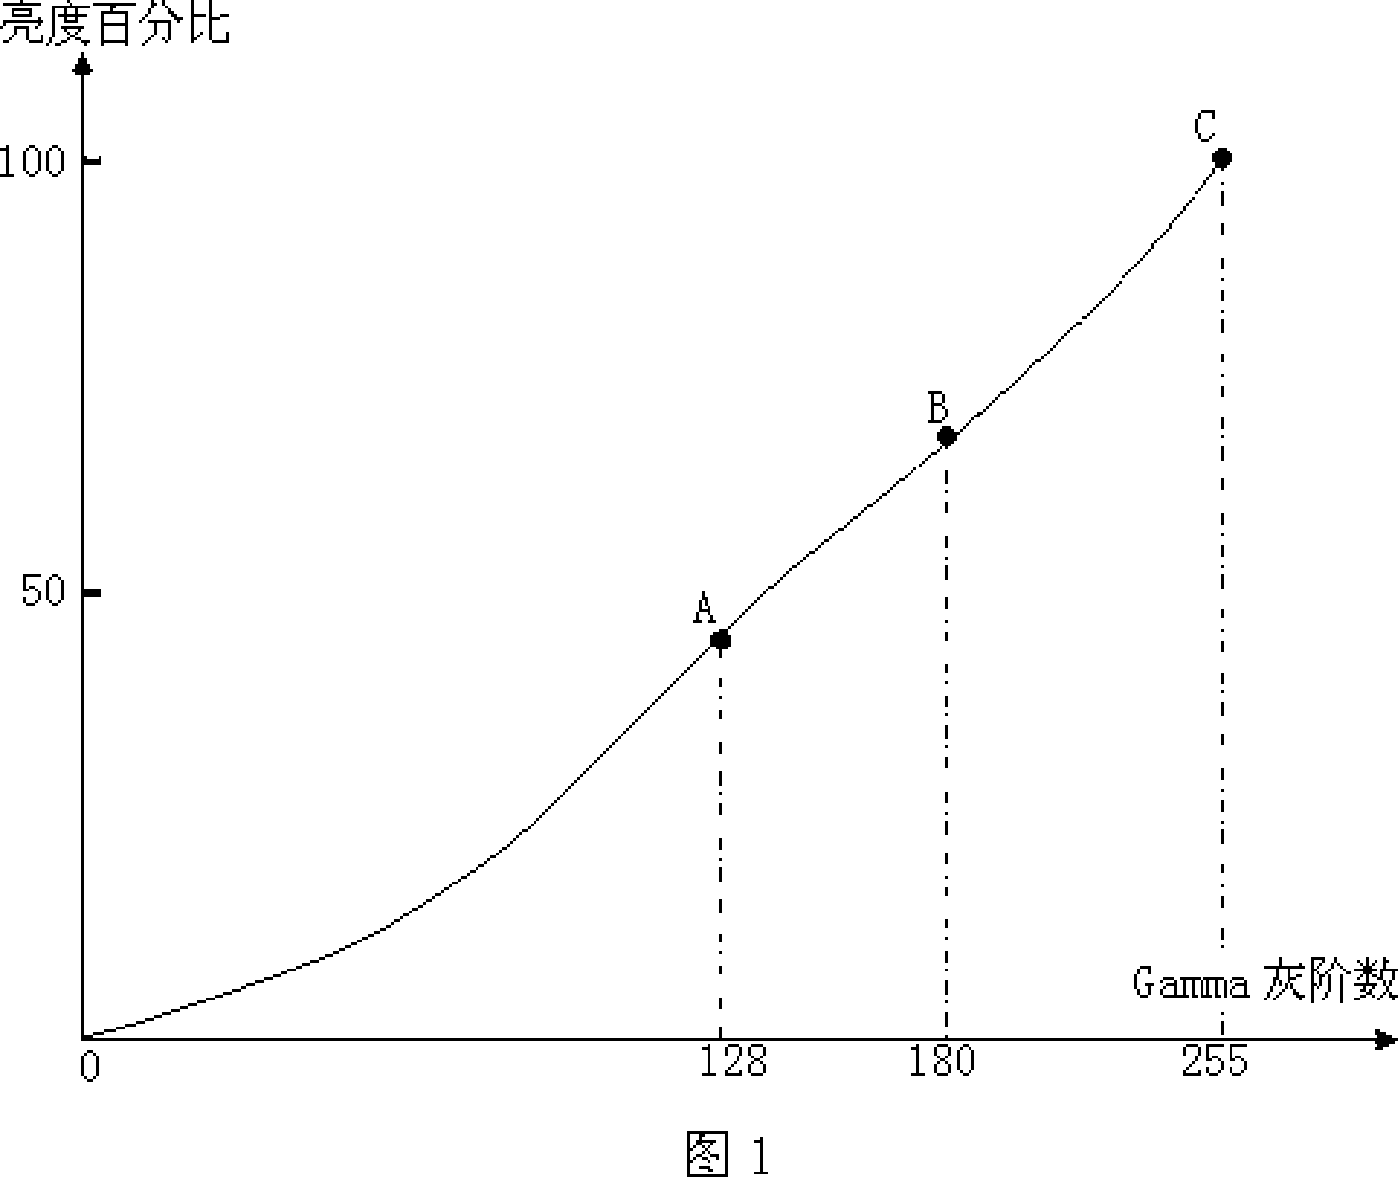 Method for correcting multi-segmented Gamma curve